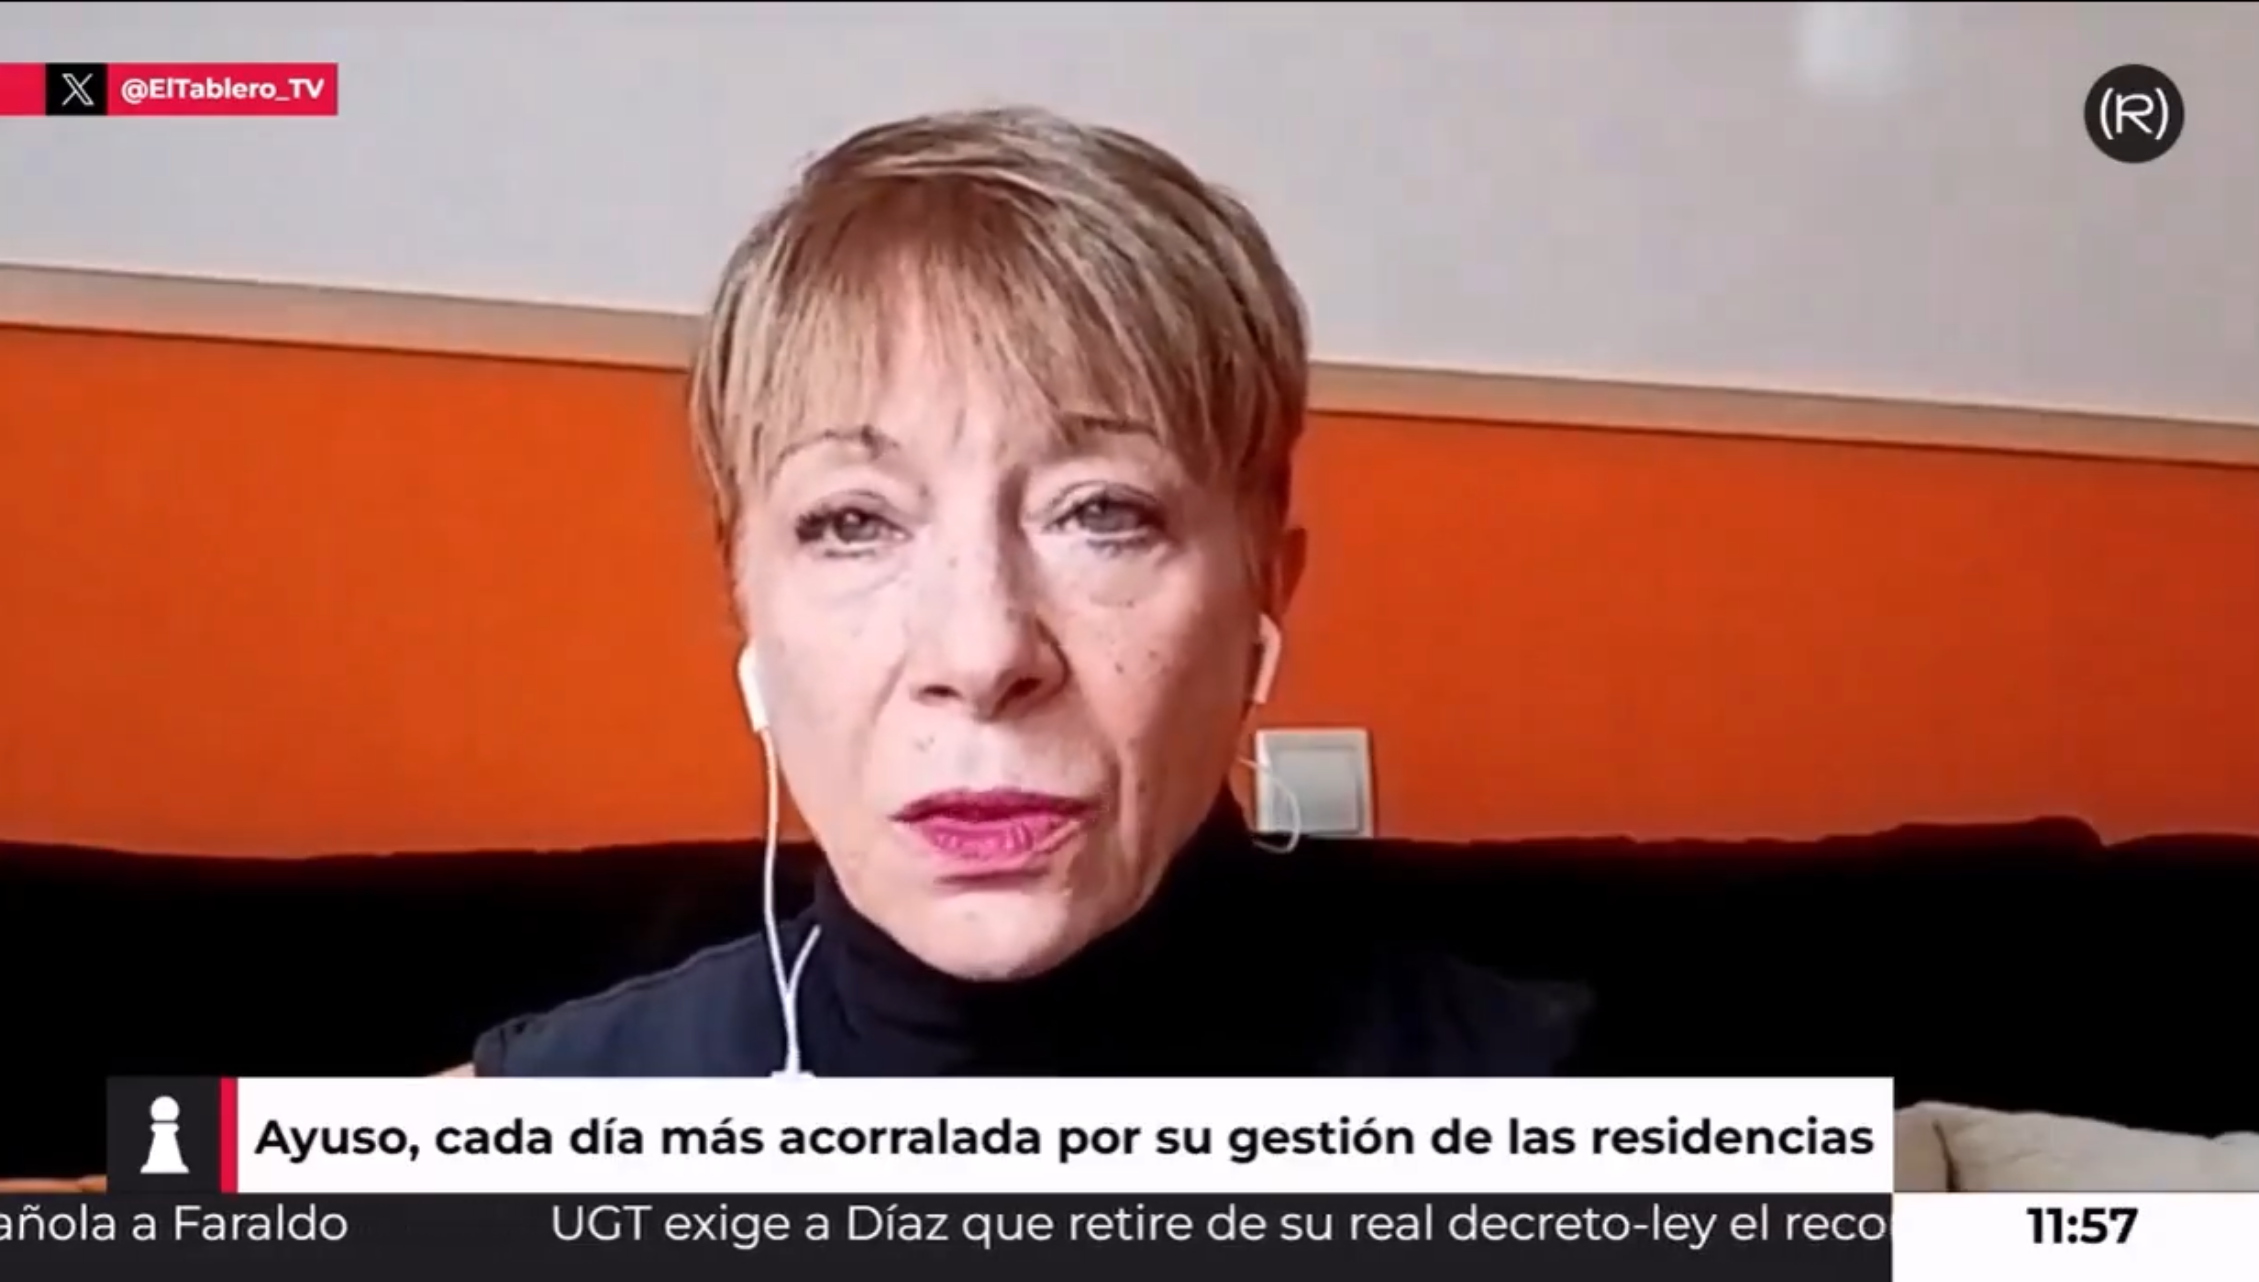 Mercedes Huertas, familiar de una de las víctimas de las residencias de Ayuso, en El Tablero